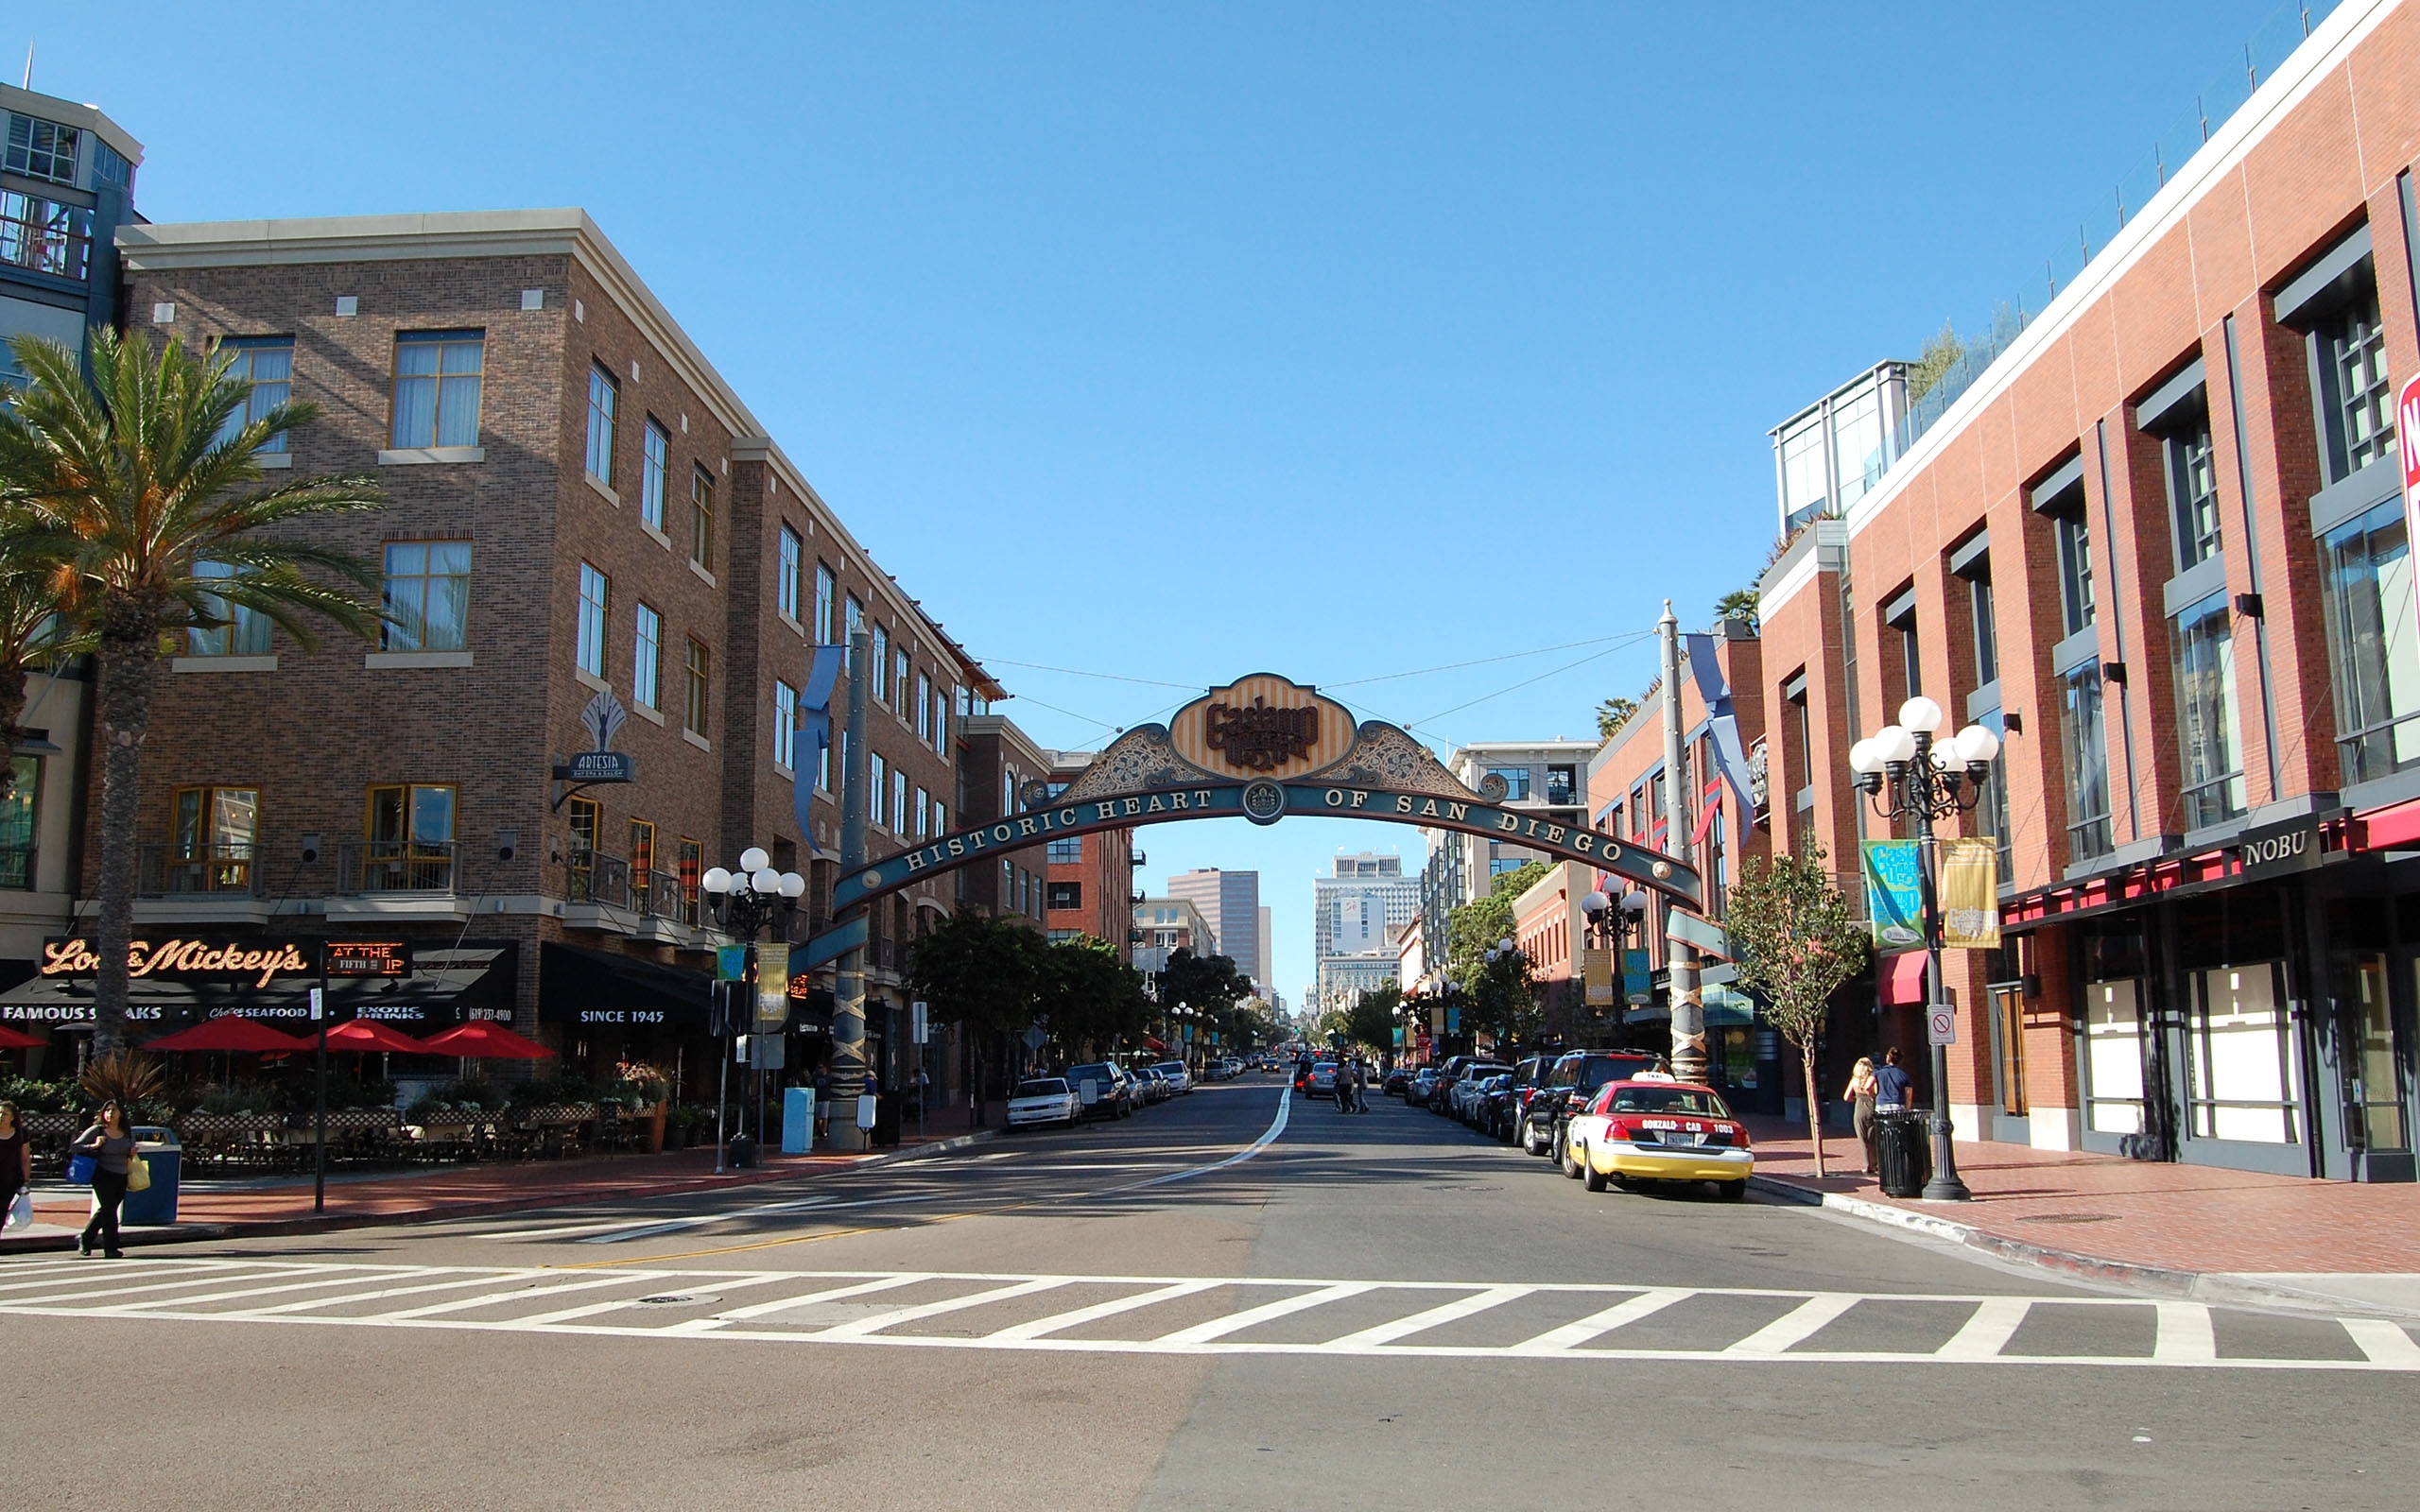 Фото сан-диего, Калифорния, США, gaslamp quarter, город - бесплатные картинки на Fonwall